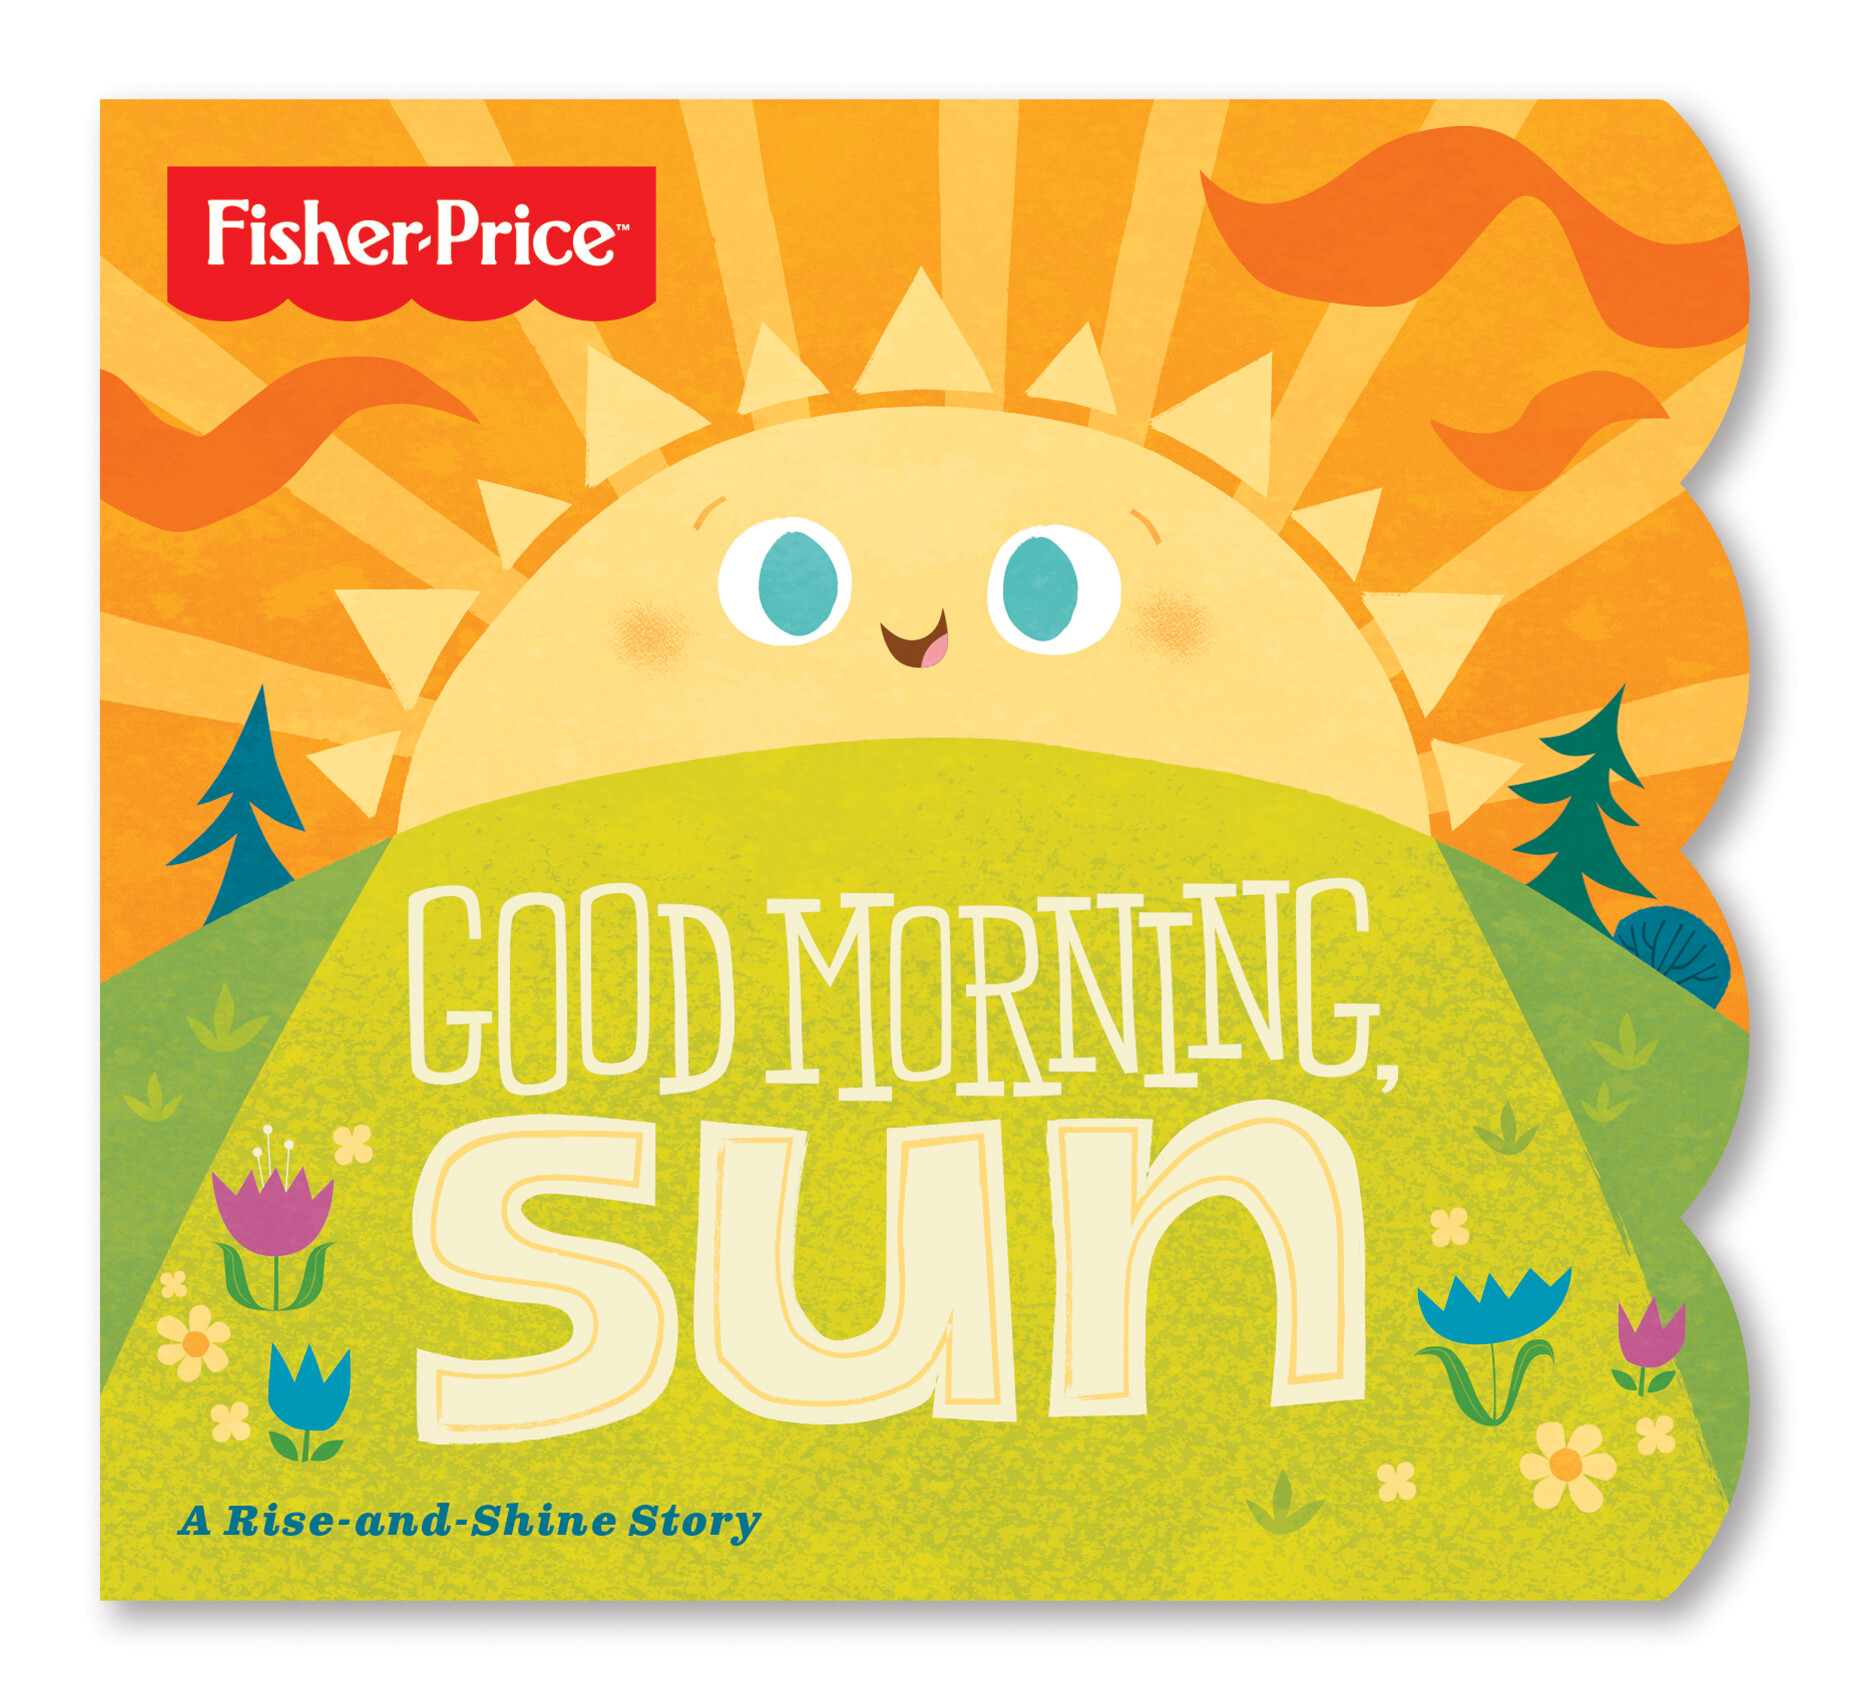 ArtStation - Fisher-Price Good Morning Sun Children's Book